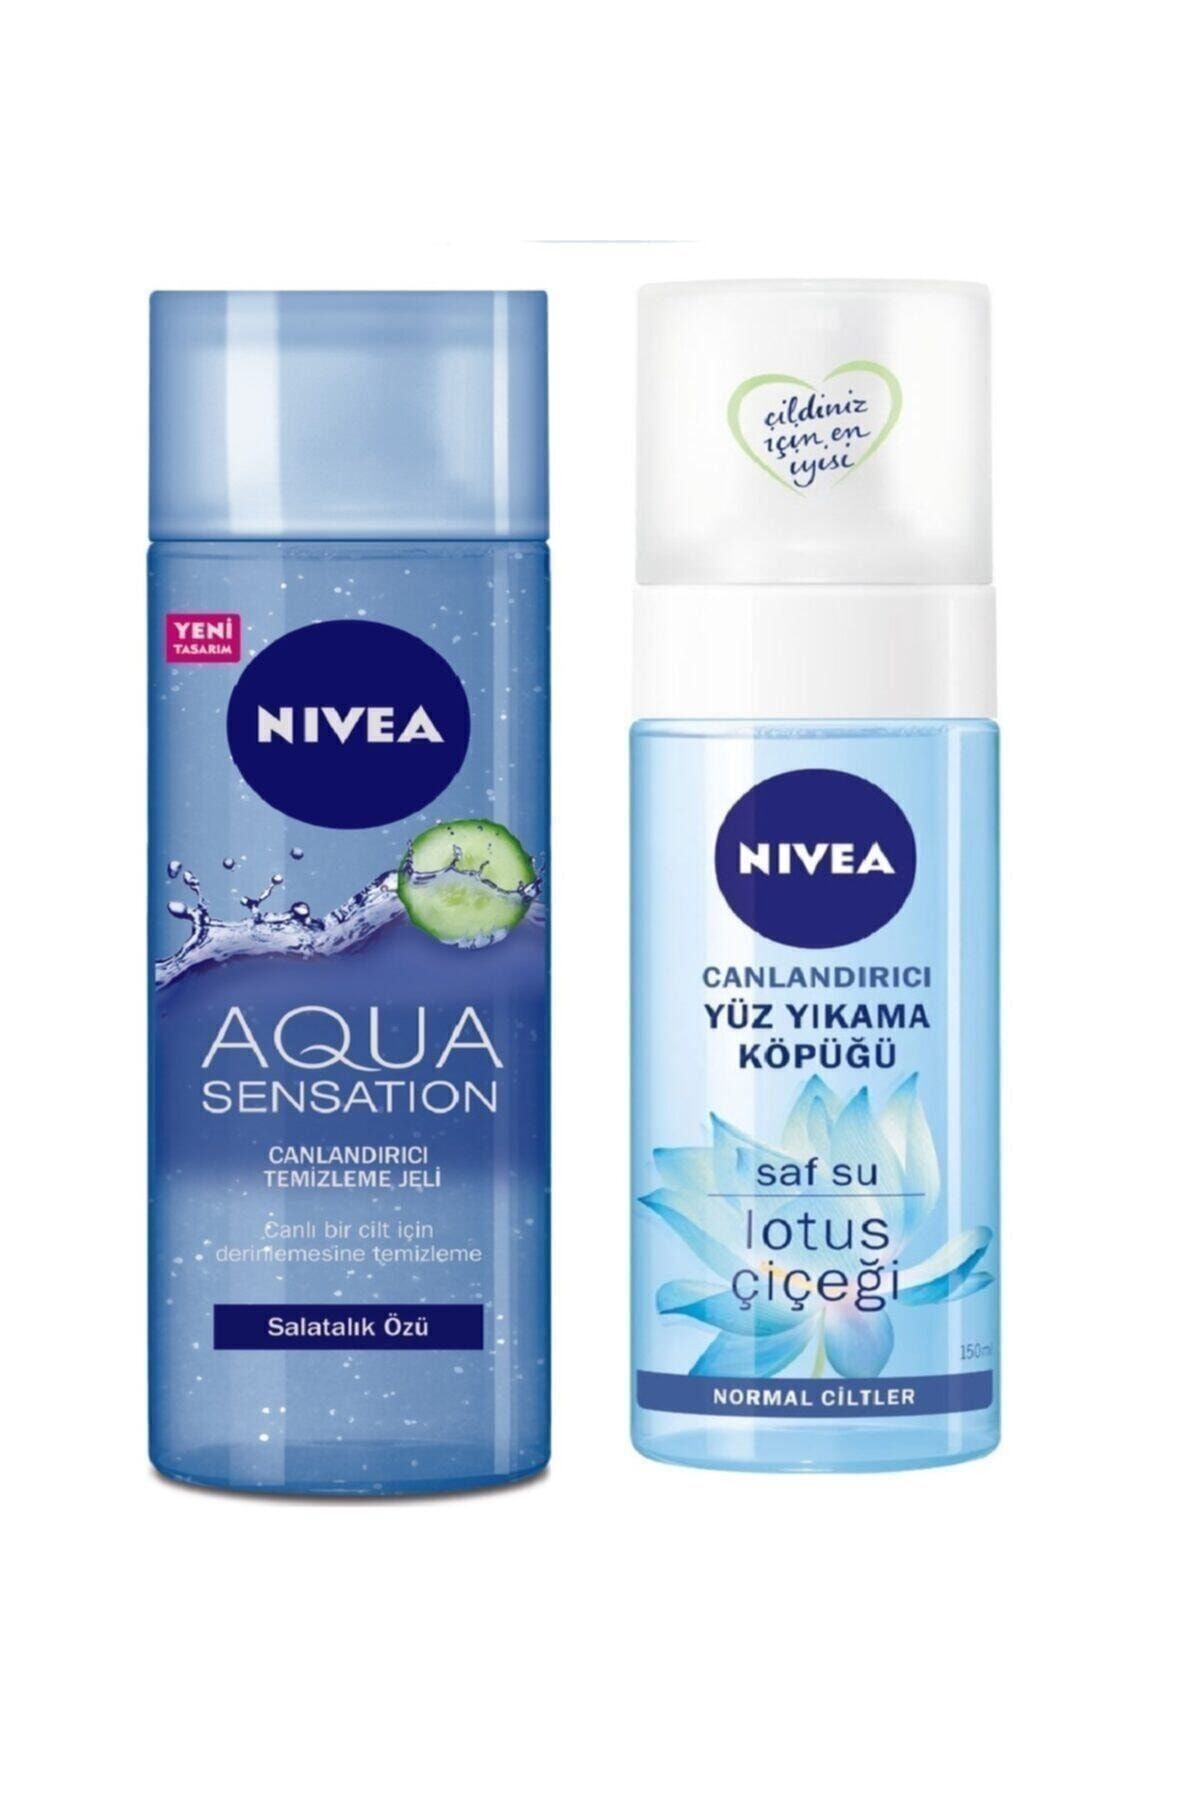 NIVEA Aqua Sensation Canlandırıcı Temizleme Jeli  Canlandırıcı Yüz Tem.köp.150 ml